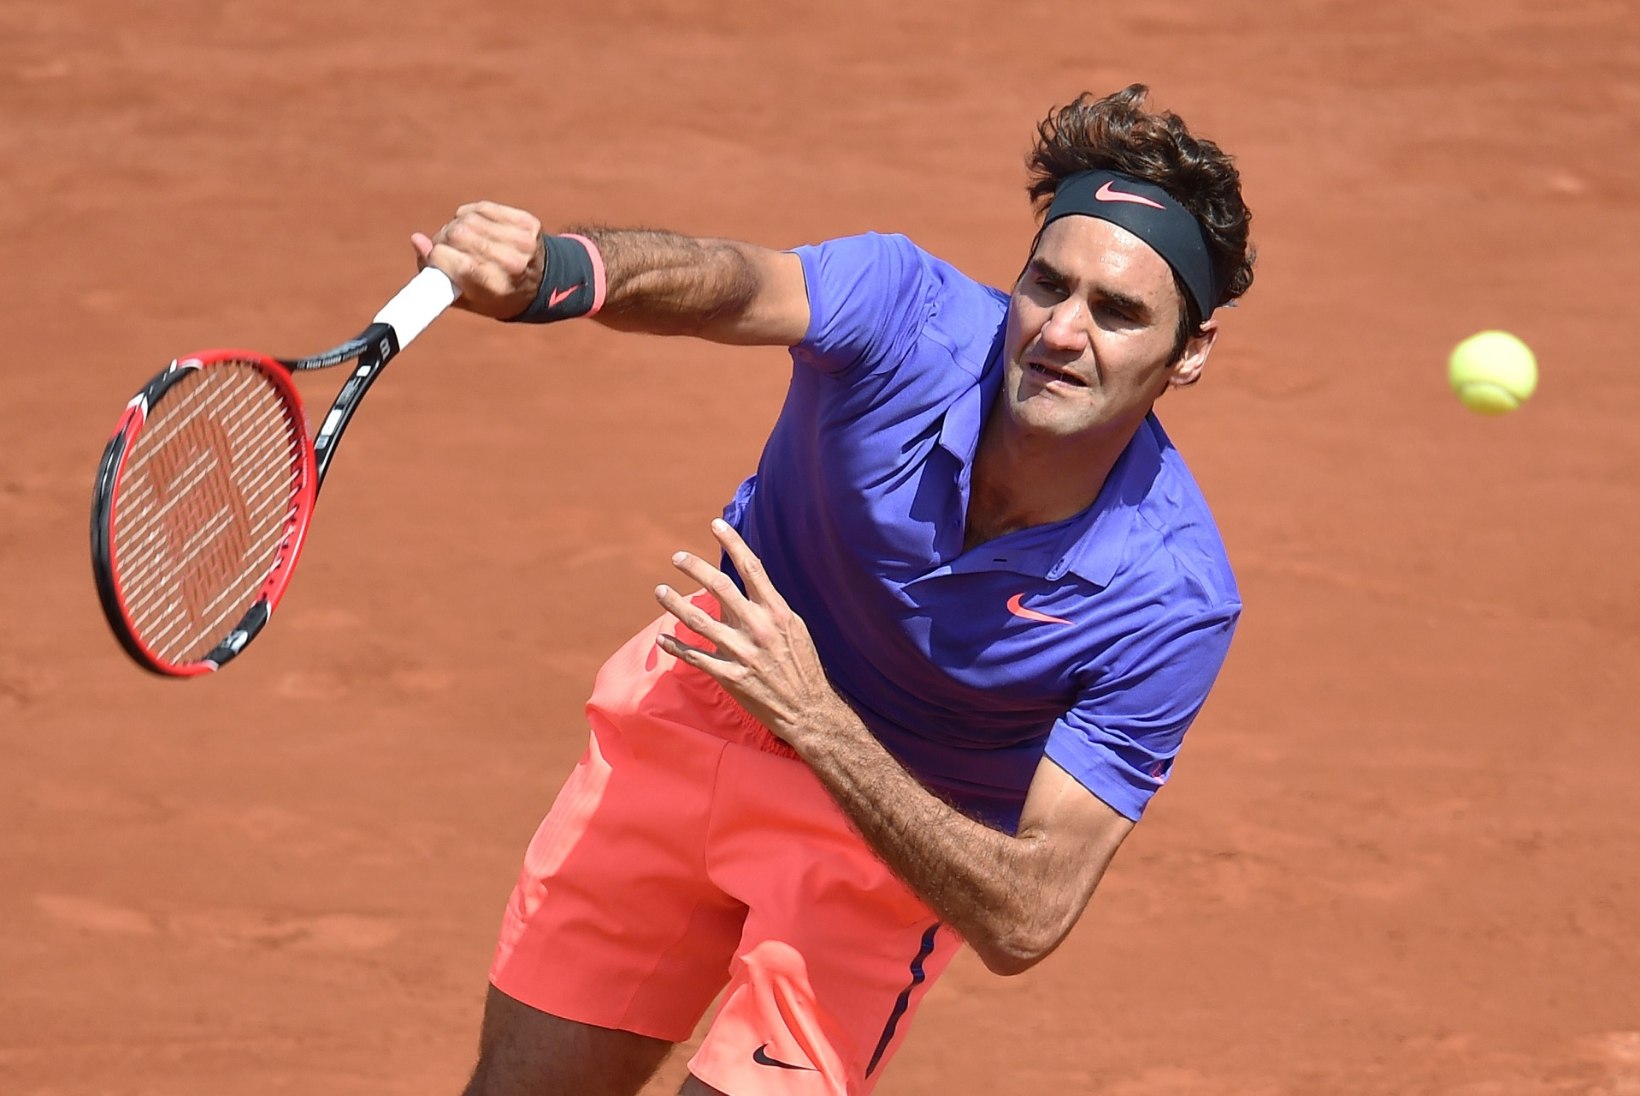 Šveitslased Federer ja Wawrinka kindlalt edasi